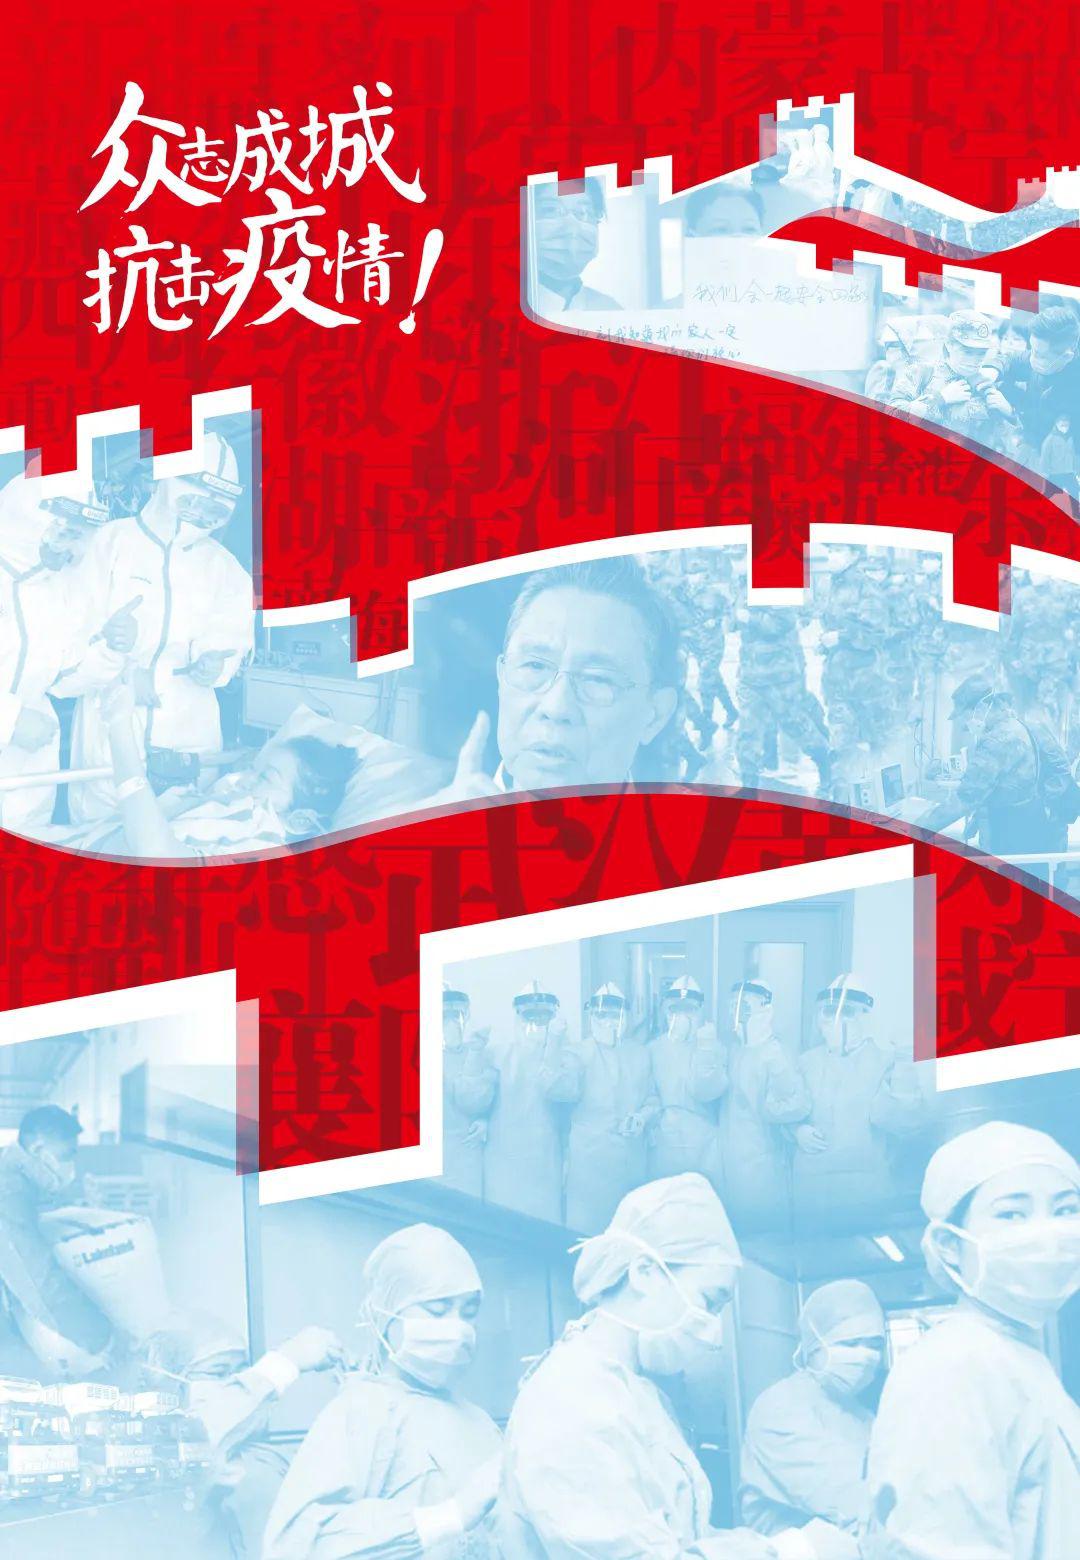 以艺战疫:2020天津美术学院抗击疫情主题美术作品展开展